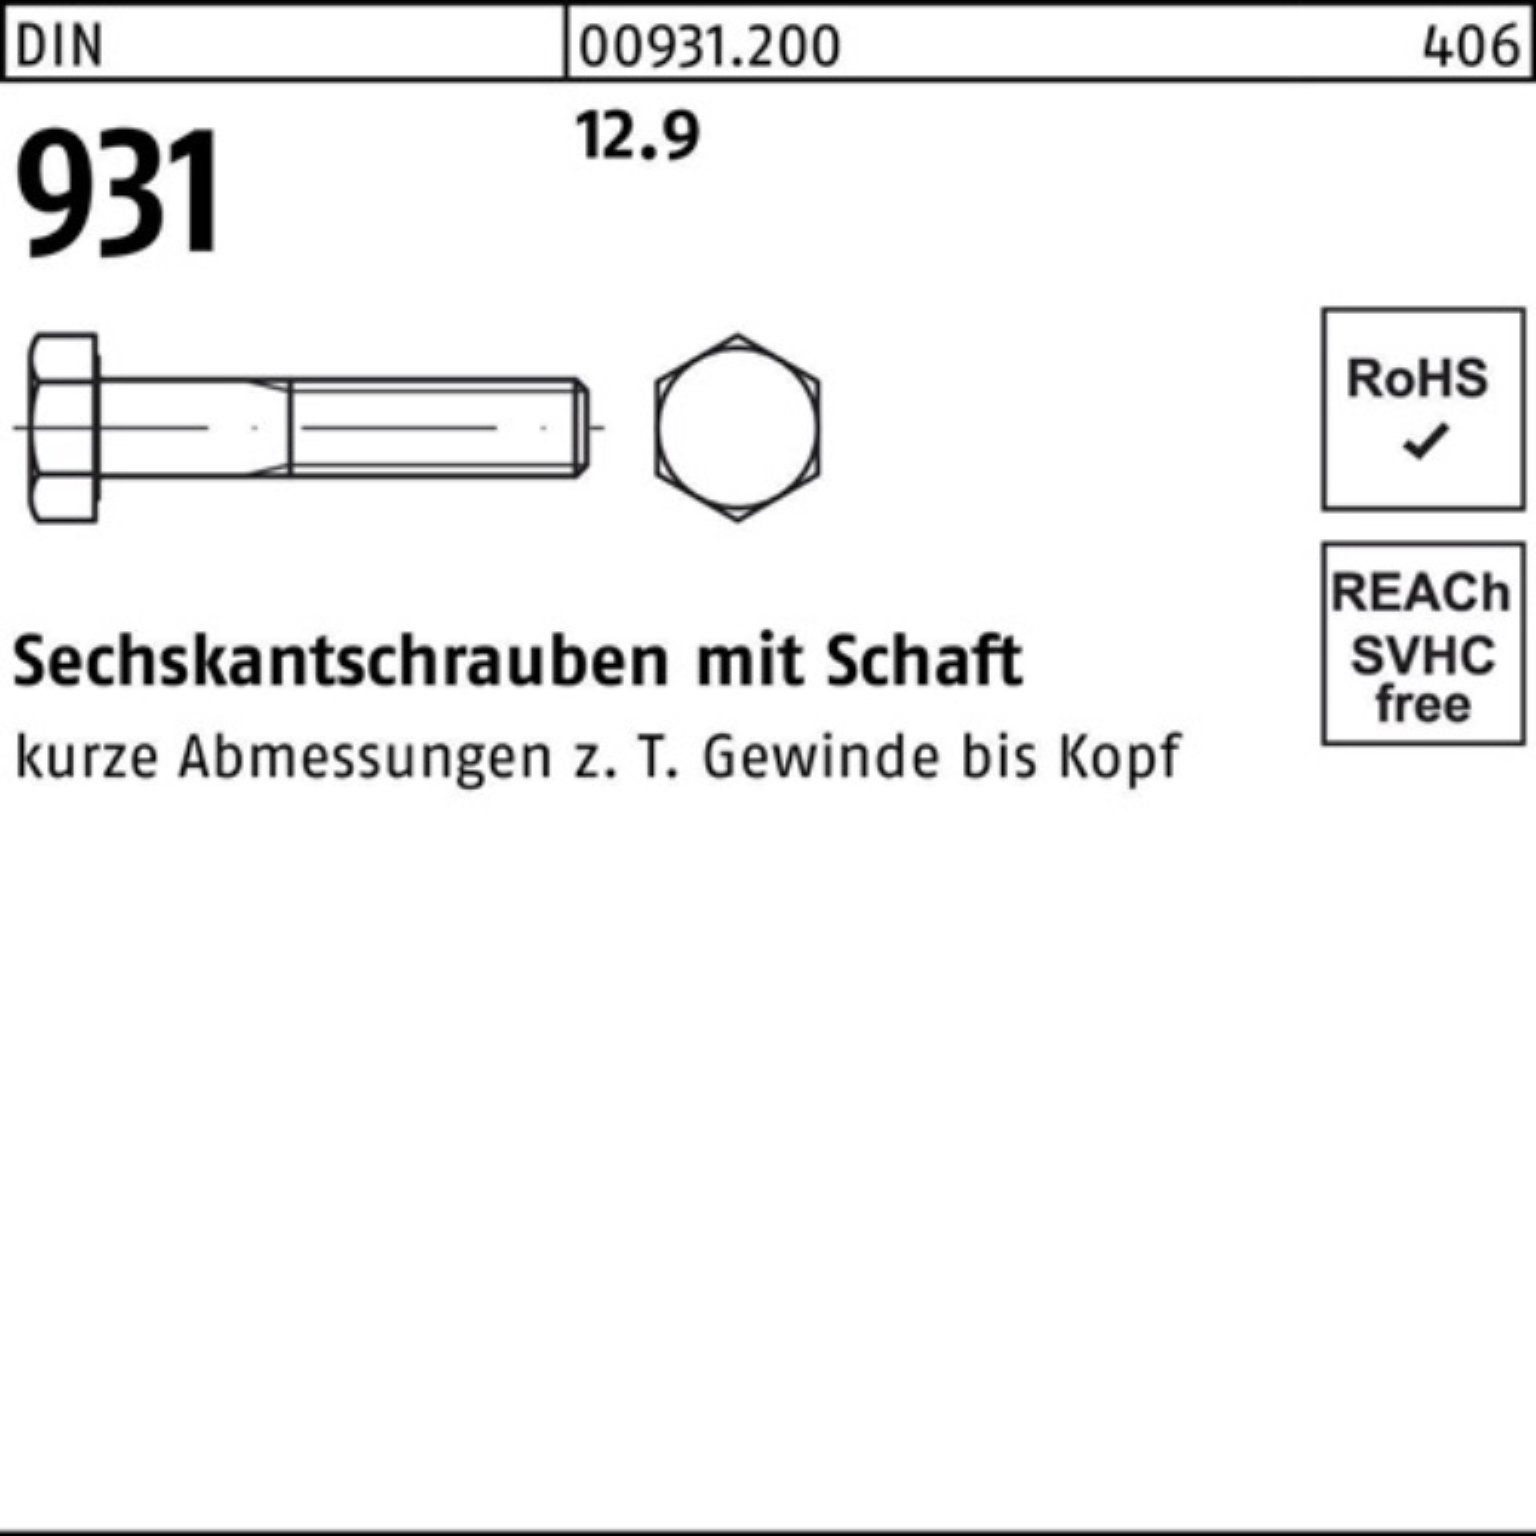 Reyher Schaft Sechskantschraube Stück 120 Pack 931 Sechskantschraube DIN 100er 12.9 10 DI M24x